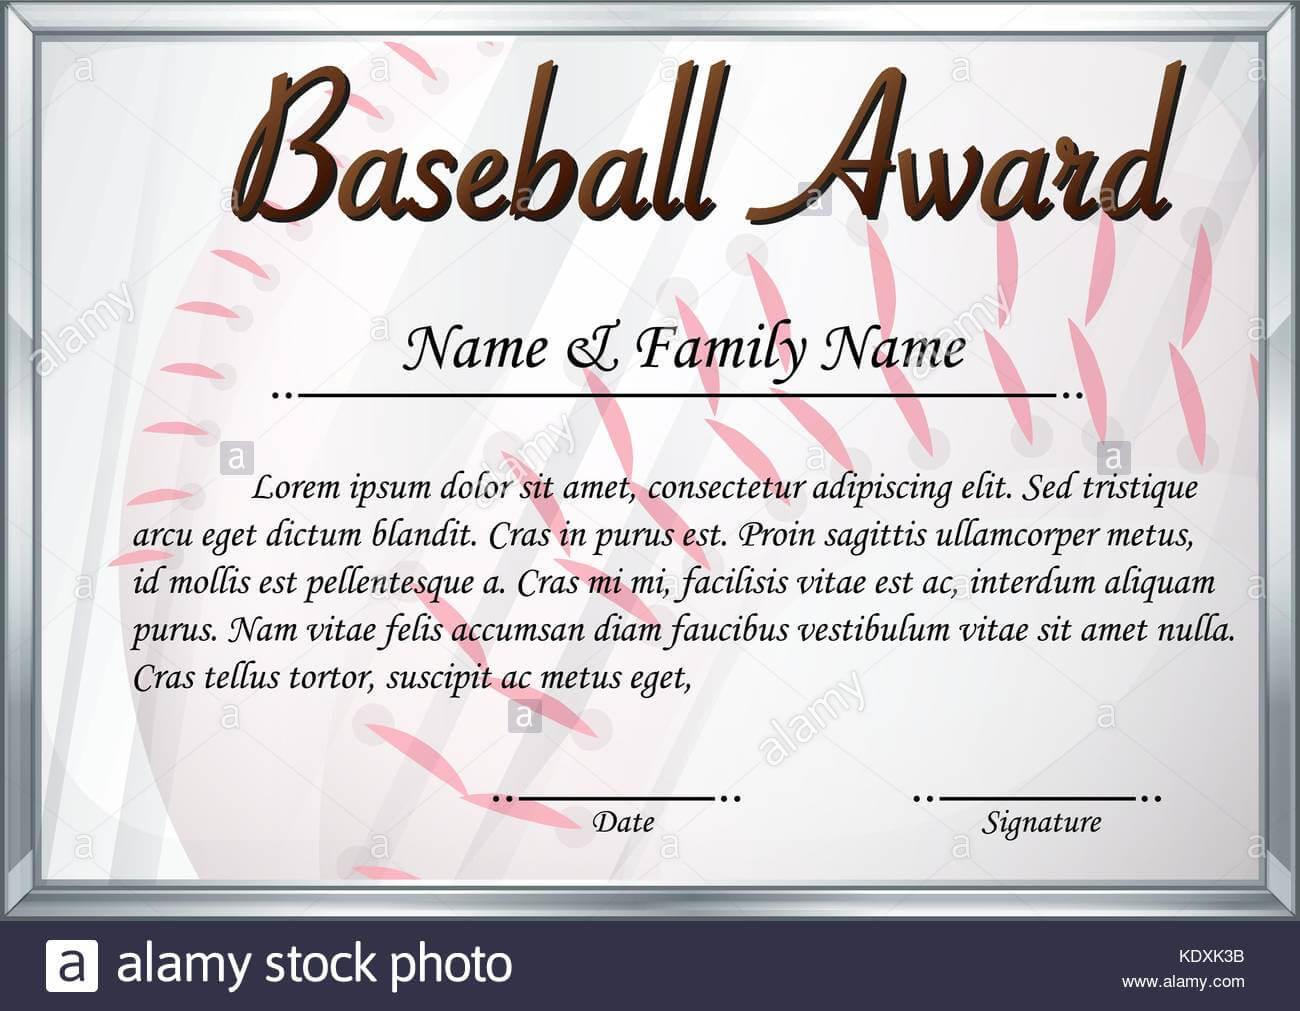 Certificate Template For Baseball Award Illustration Stock Inside Softball Award Certificate Template